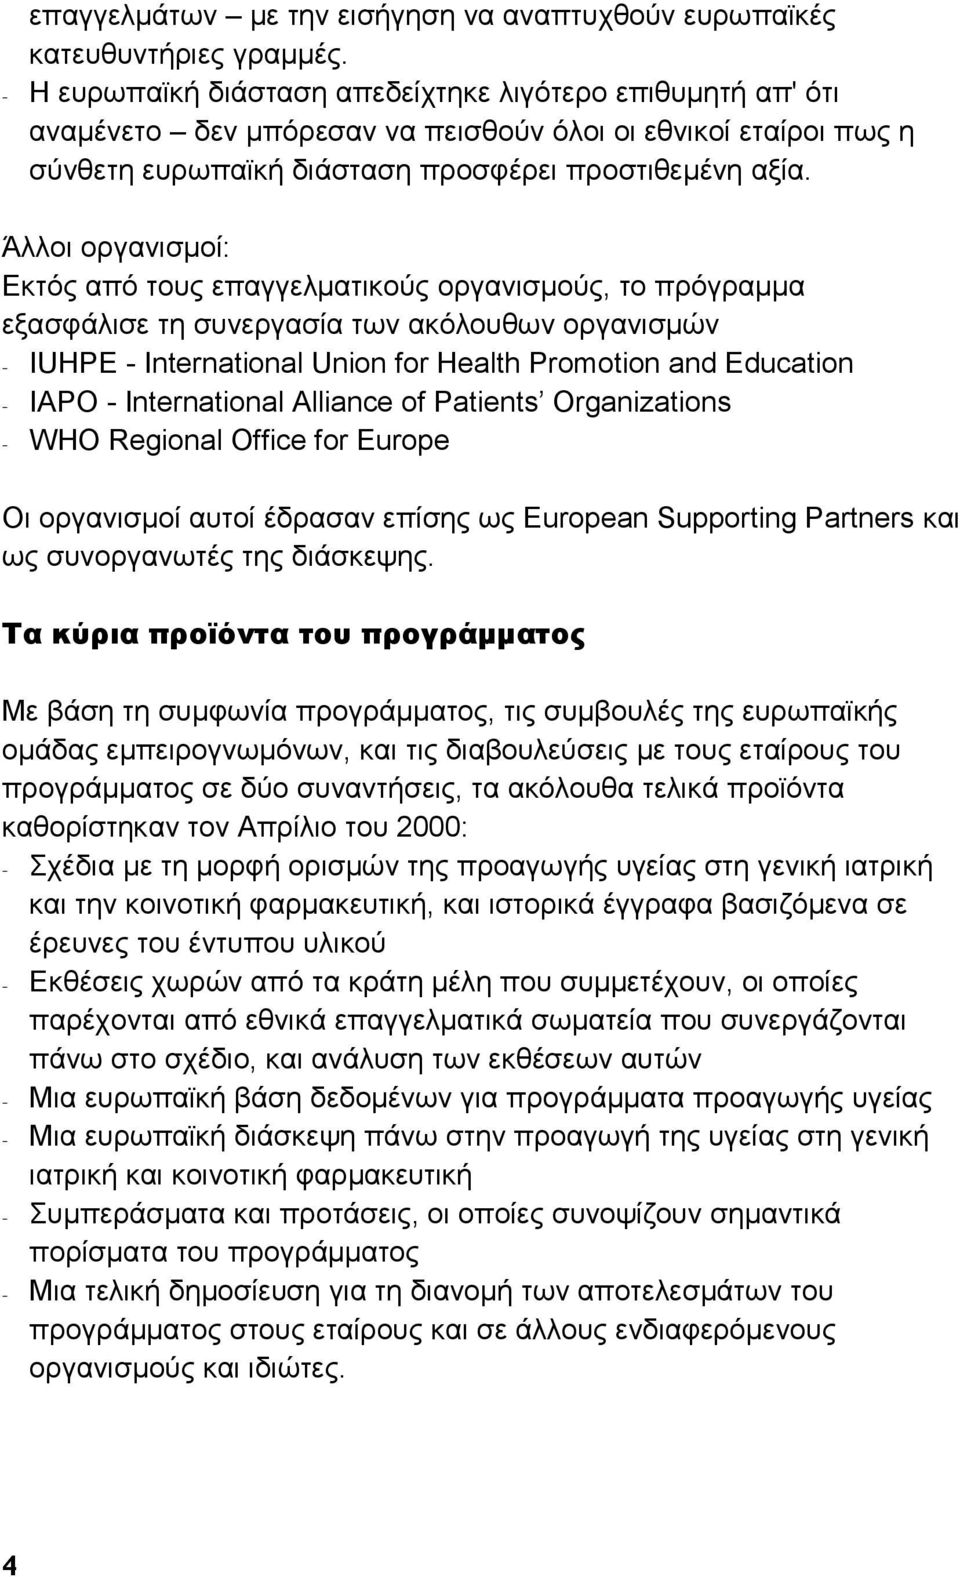 Άλλοι οργανισμοί: Εκτός από τους επαγγελματικούς οργανισμούς, το πρόγραμμα εξασφάλισε τη συνεργασία των ακόλουθων οργανισμών - IUHPE - International Union for Health Promotion and Education - IAPO -